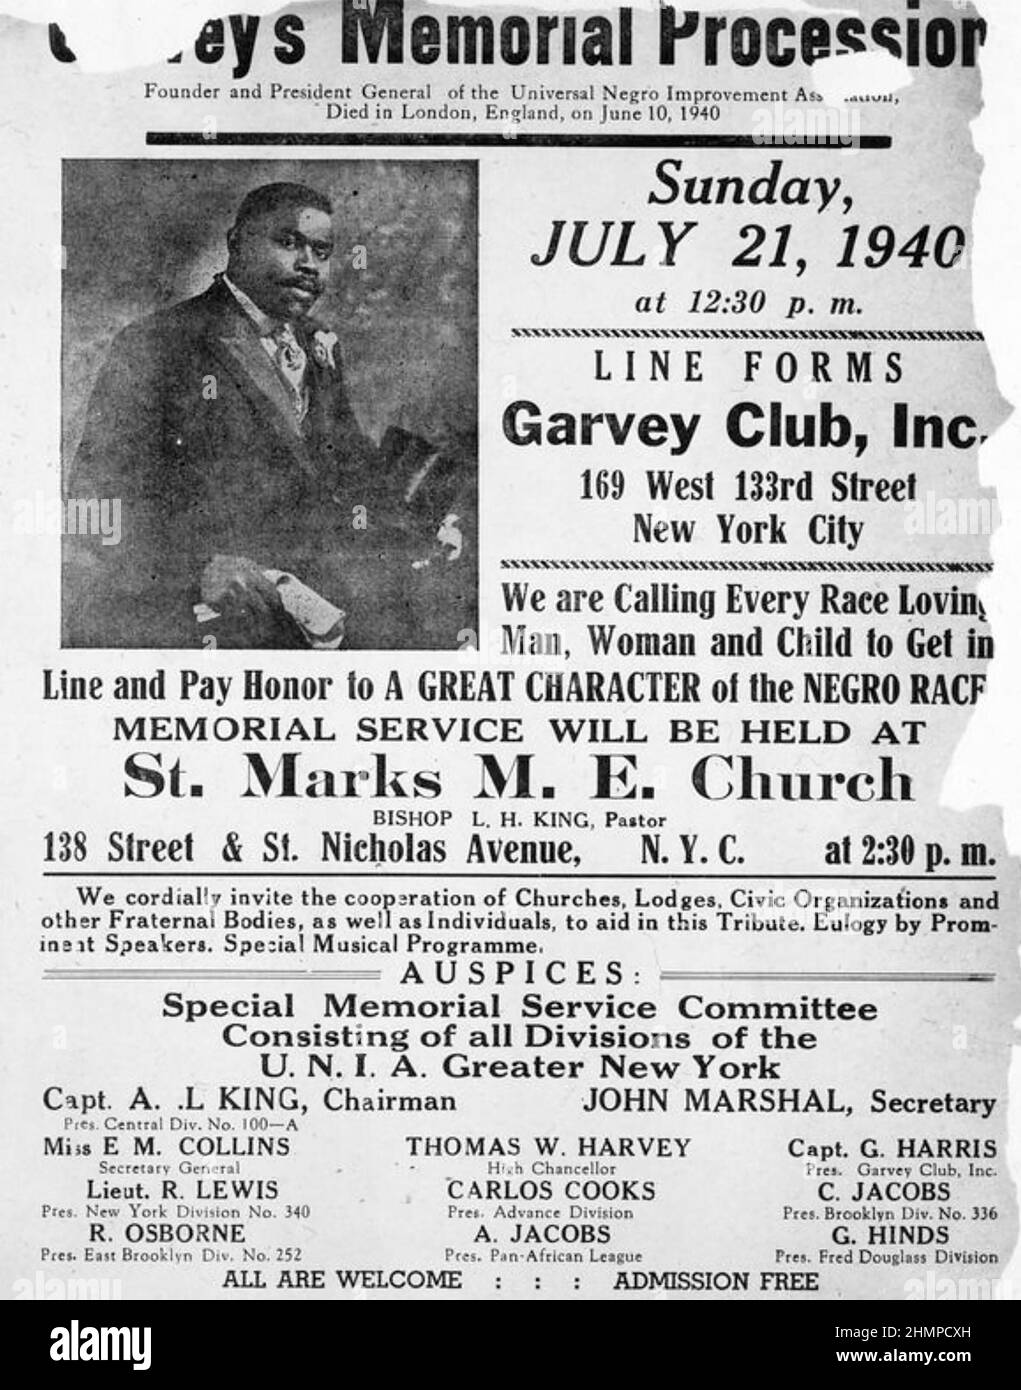 MARCUS GARVEY (1887-1940) giornalista, editore e attivista giamaicano morì il 10 giugno 1940. Poster per una processione commemorativa di New York,. Foto Stock